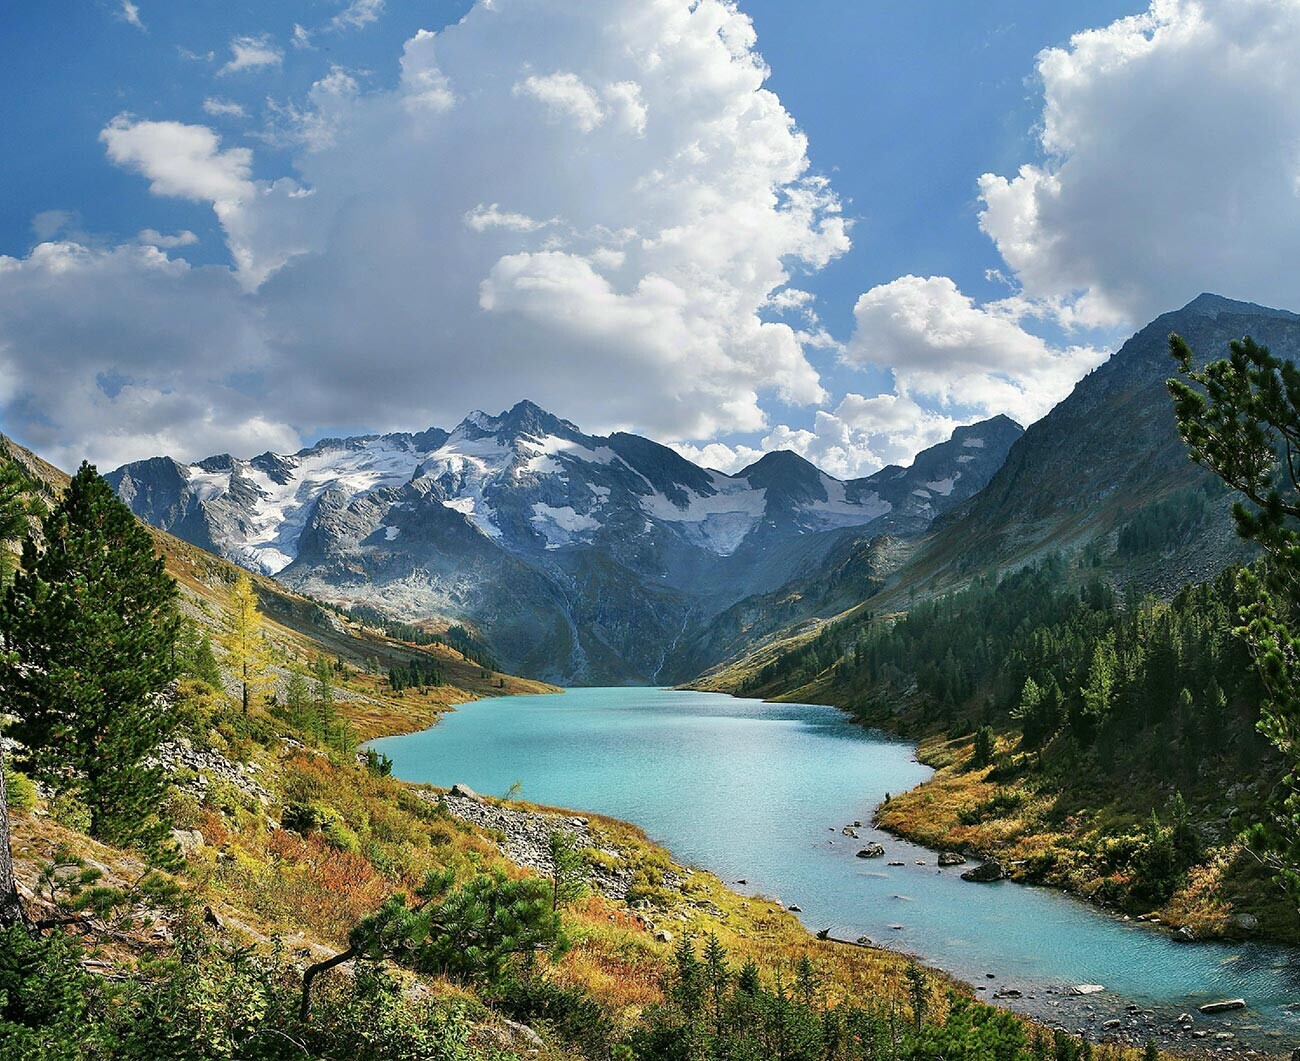 Русија, Алтај, Република Алтај, Катунски гребен. Мултинското езеро Попречни. Алтај се наоѓа на листата на светското наследство на УНЕСКО.

